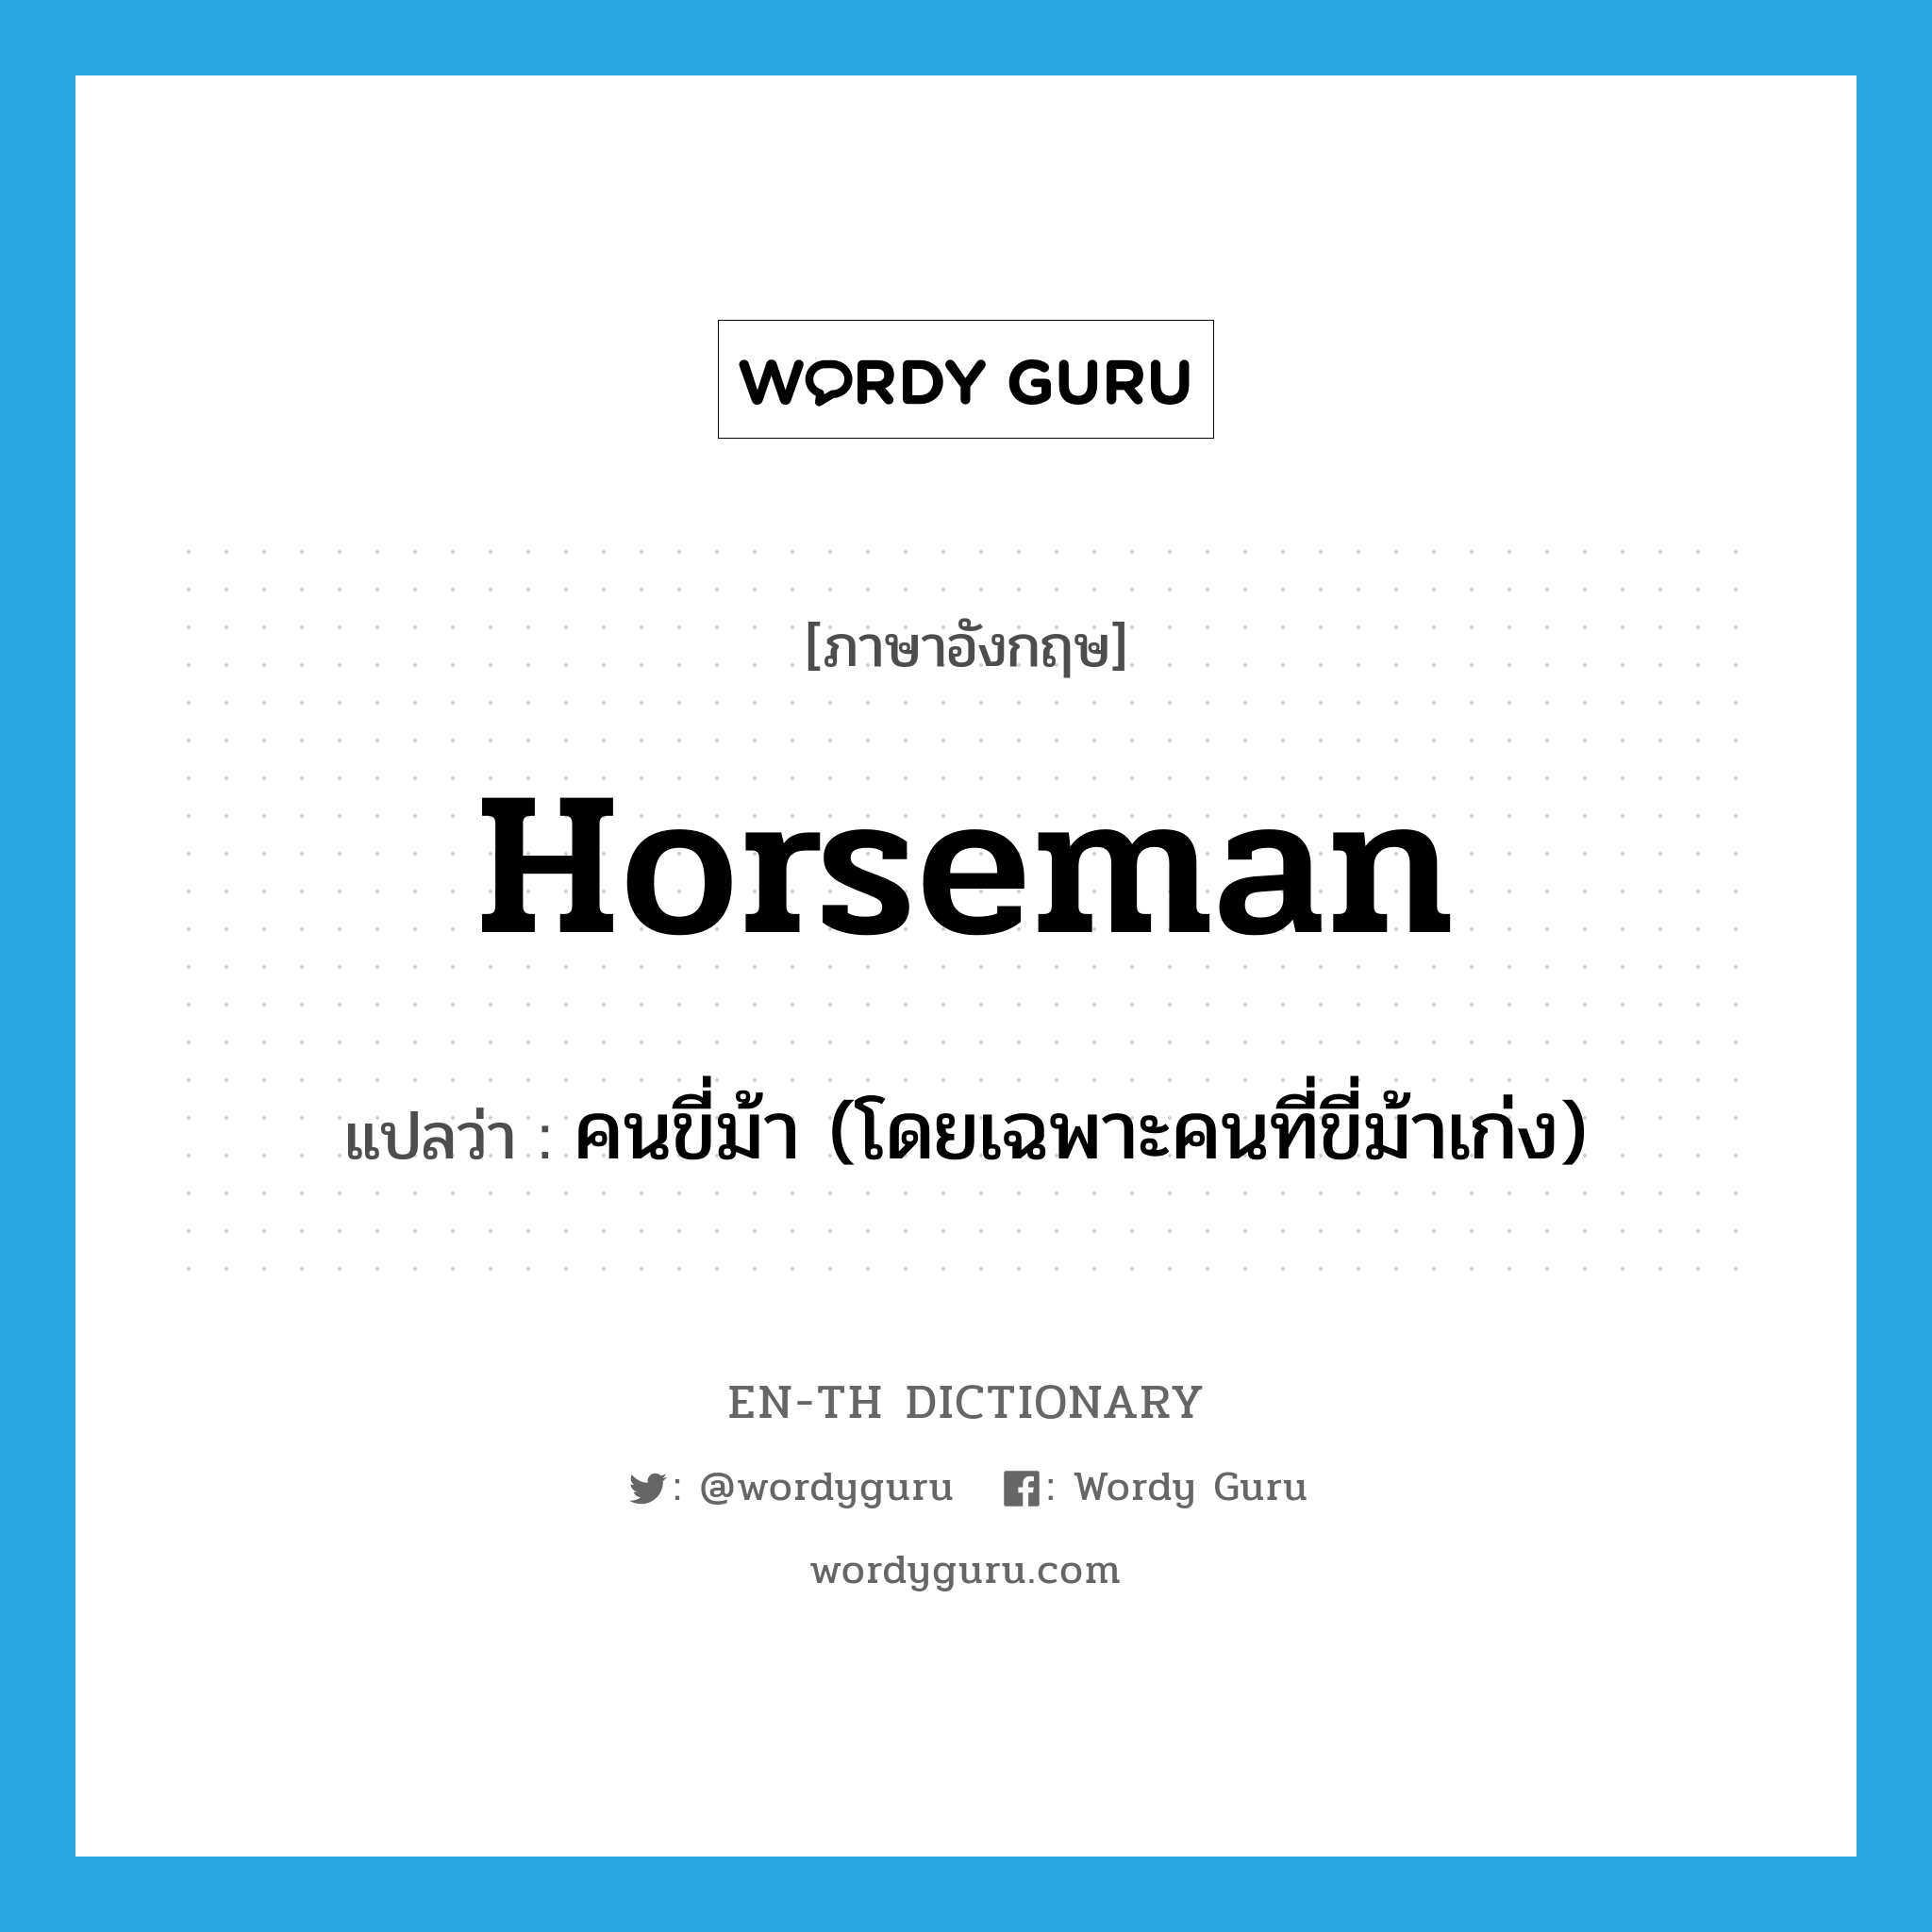 คนขี่ม้า (โดยเฉพาะคนที่ขี่ม้าเก่ง) ภาษาอังกฤษ?, คำศัพท์ภาษาอังกฤษ คนขี่ม้า (โดยเฉพาะคนที่ขี่ม้าเก่ง) แปลว่า horseman ประเภท N หมวด N